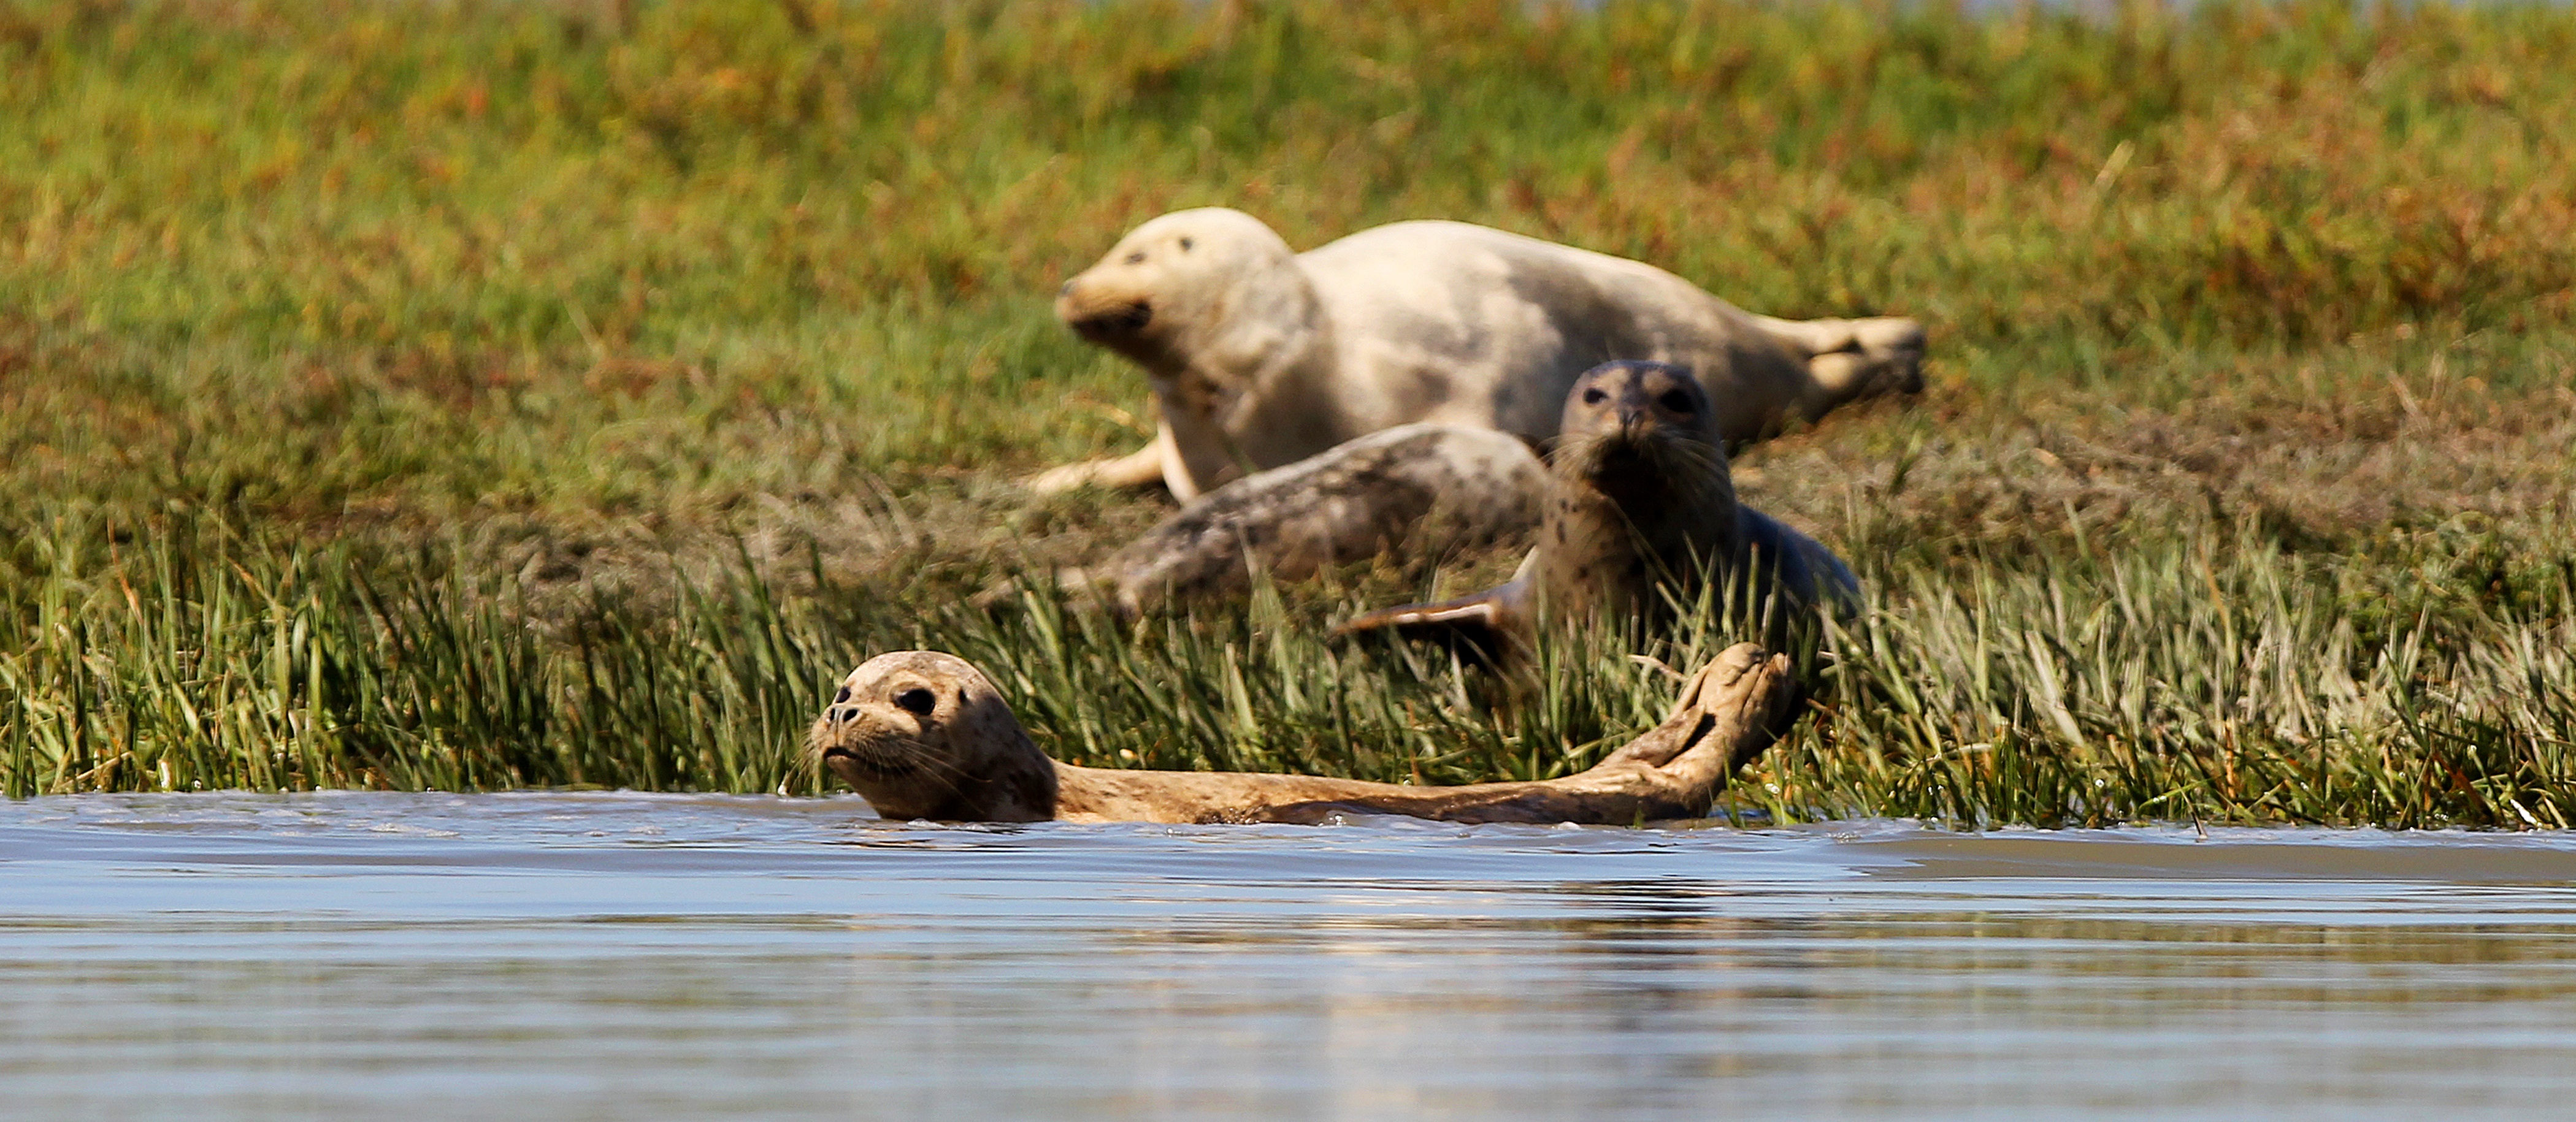 Harbor seals in Mowry Slough wetlands adjacent to Area 4